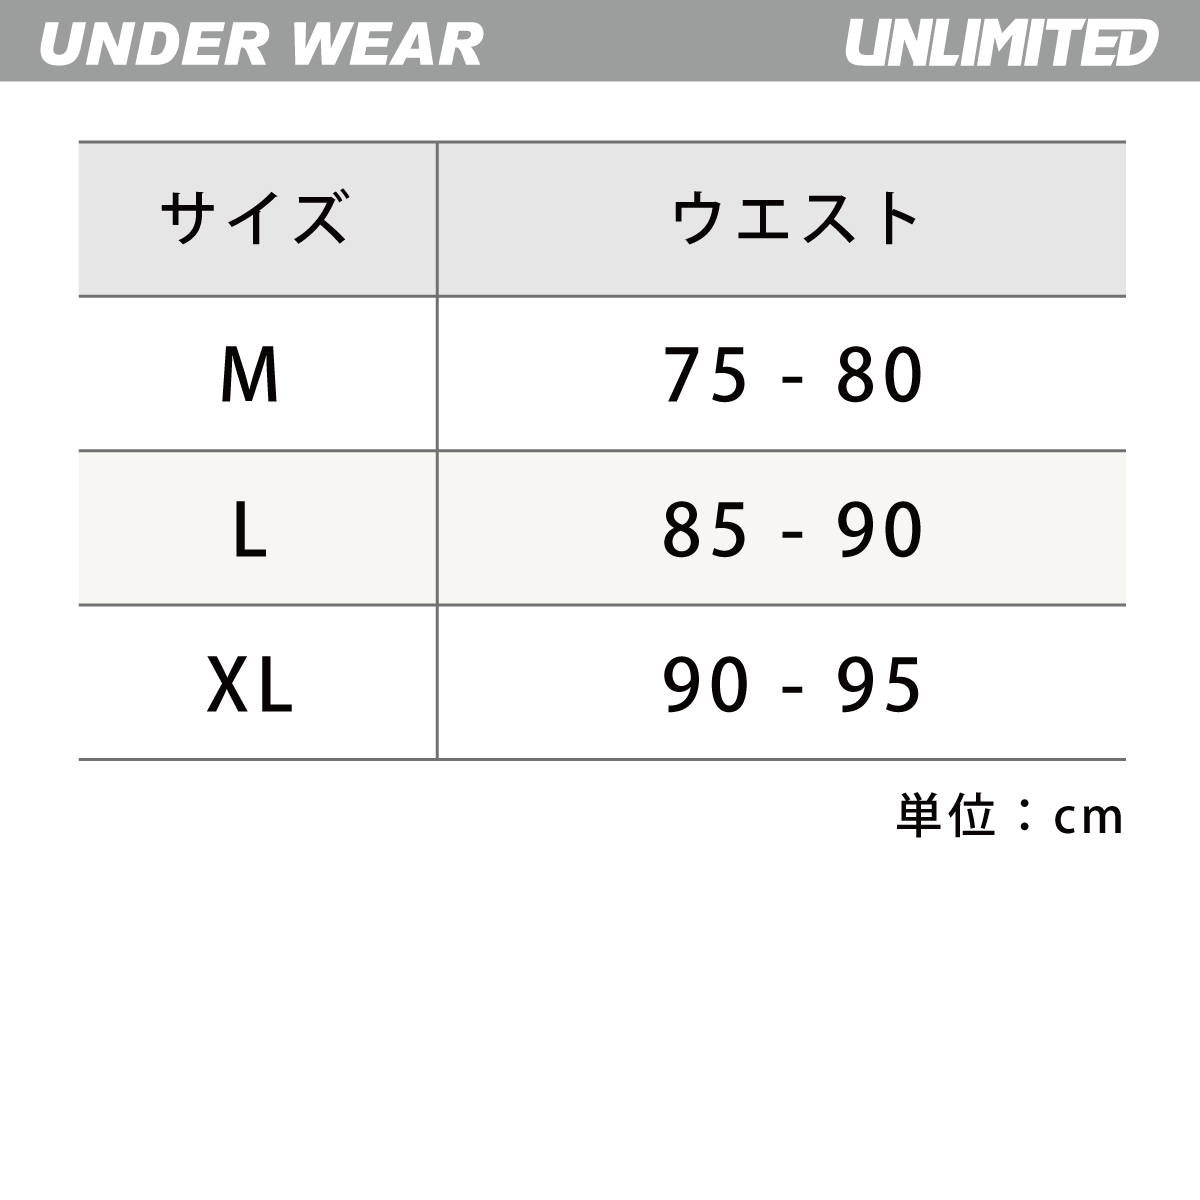 スポーツインナー メンズ アンダーパンツ ULN203BK  日焼防止  ウエット UNLIMITED アンリミテッド  マリンスポーツ